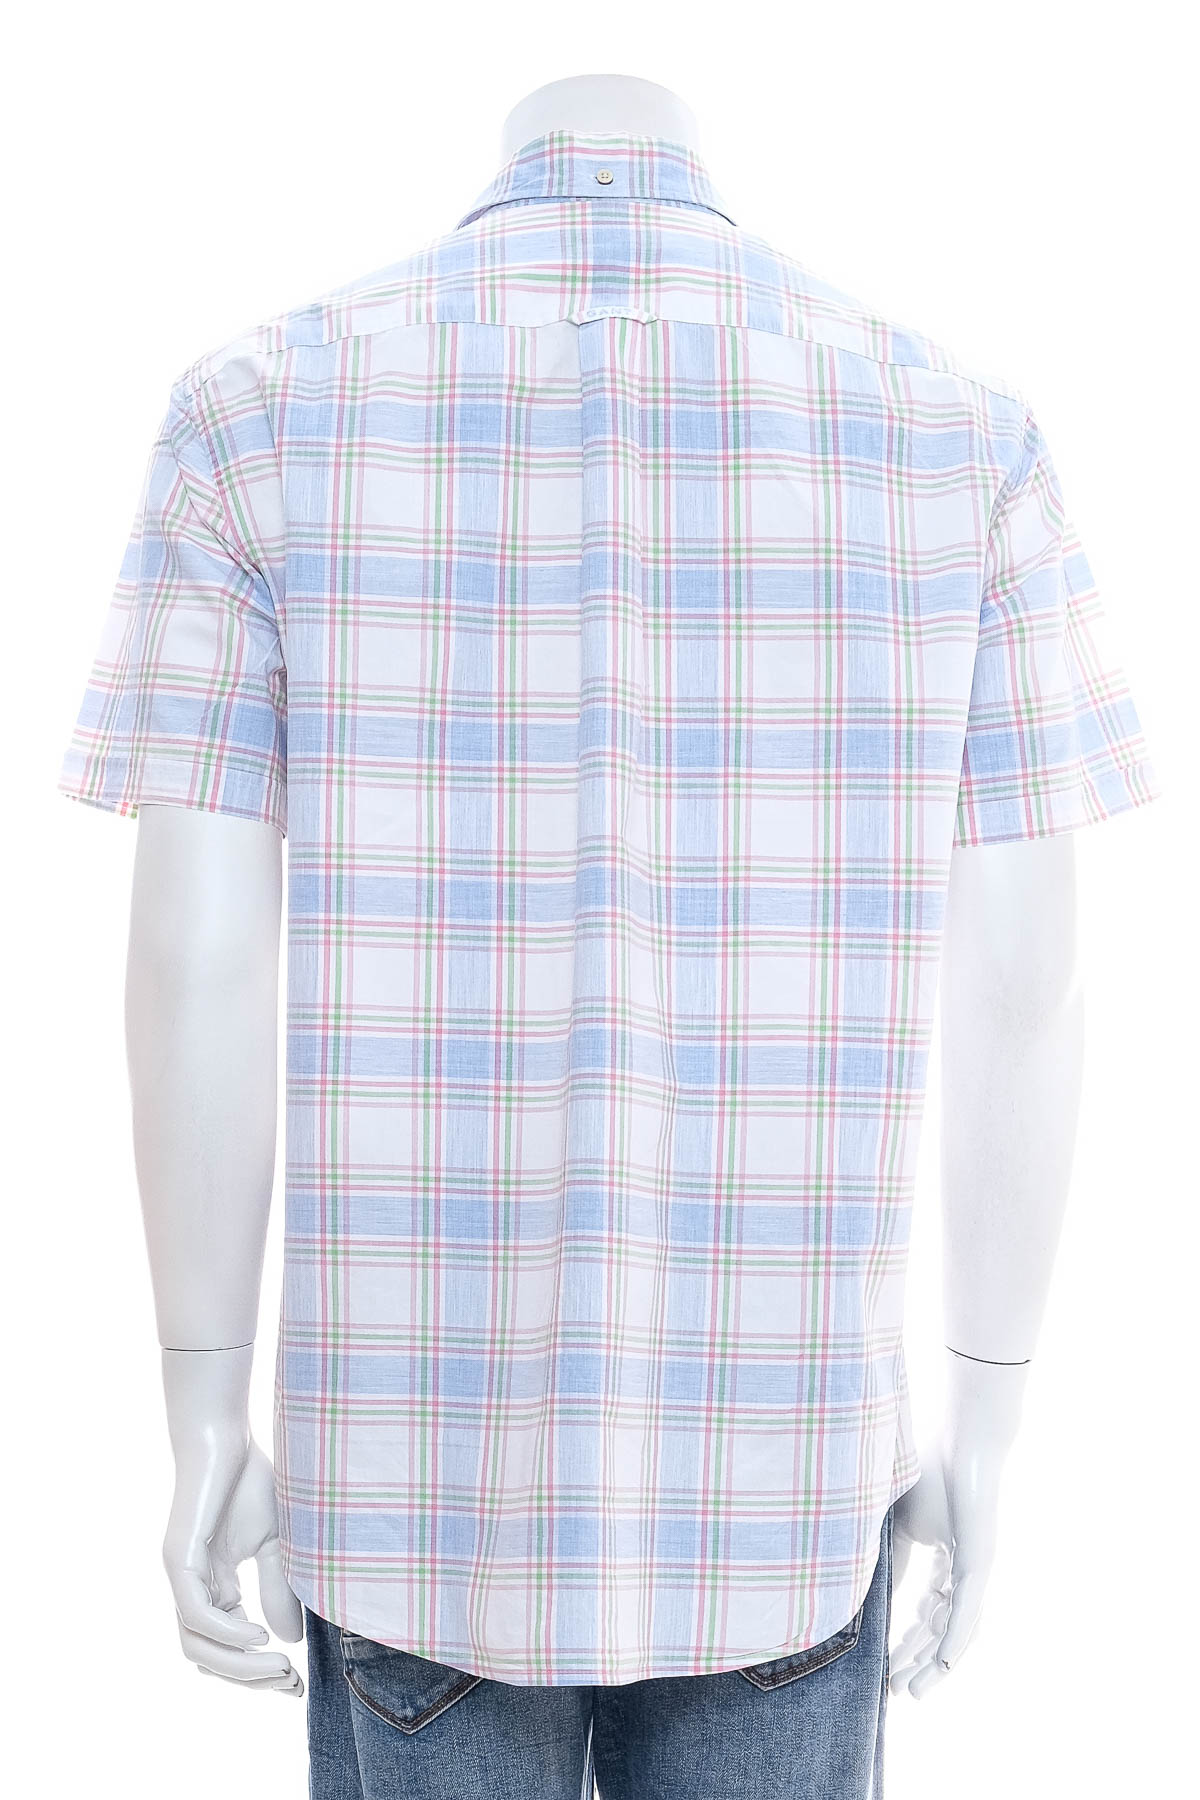 Men's shirt - Gant - 1